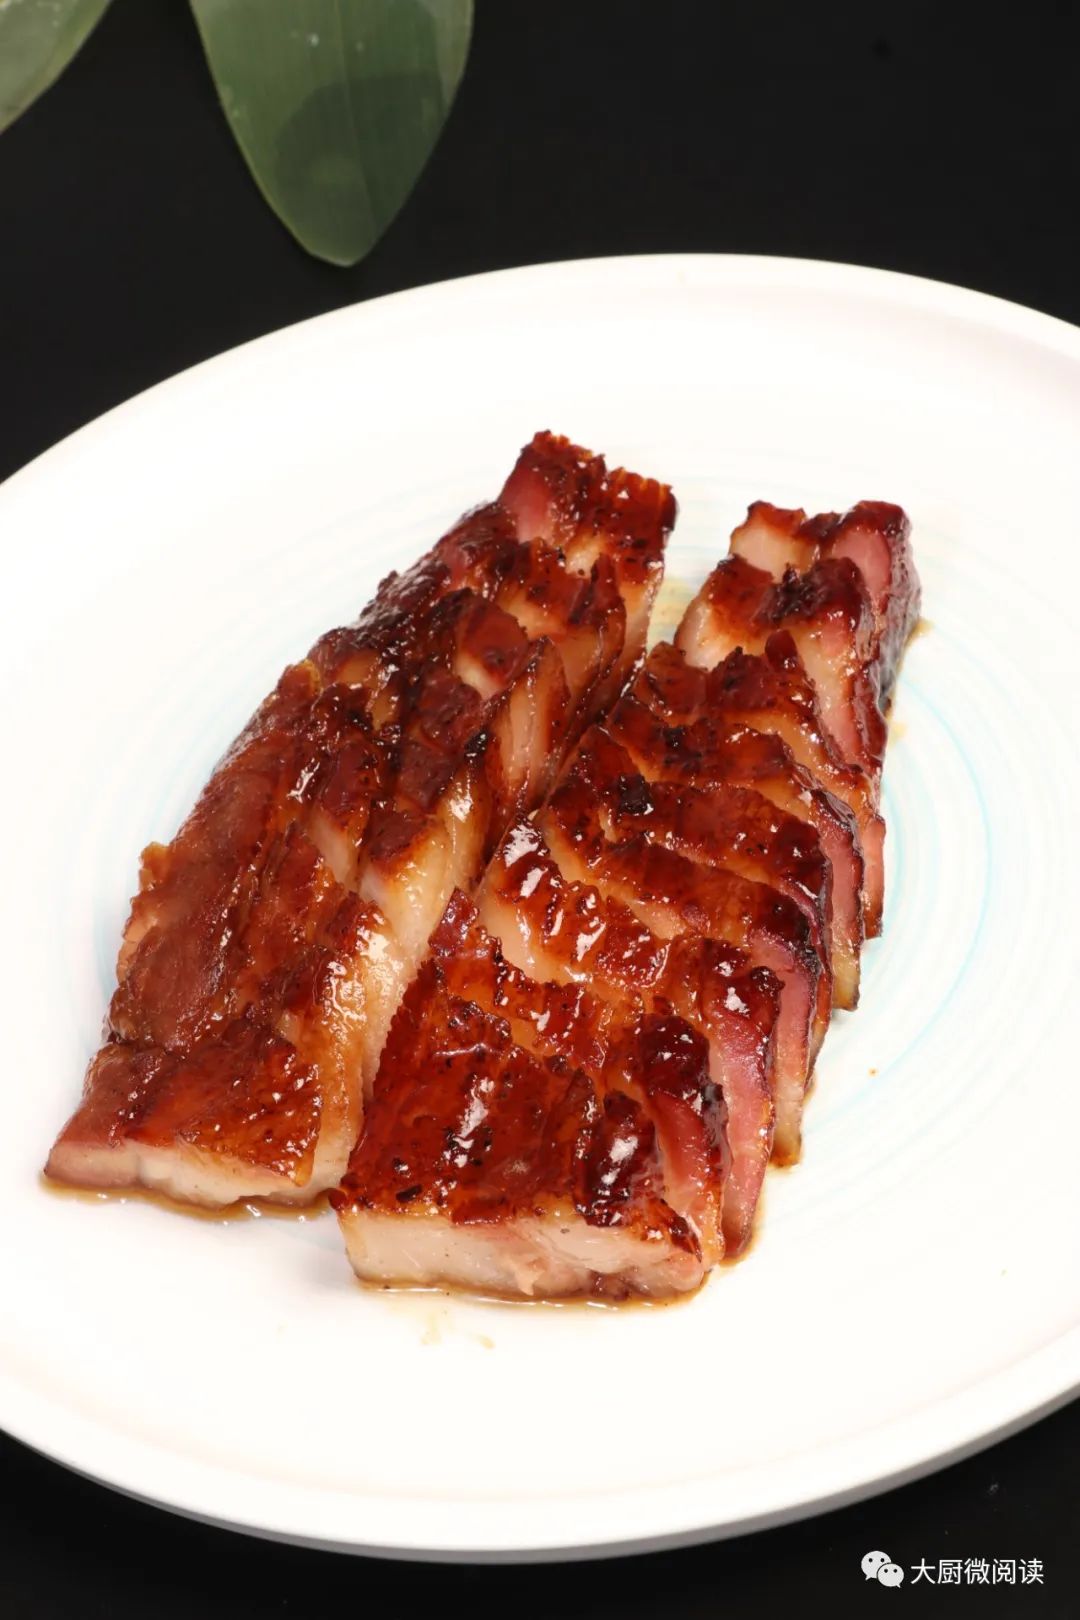 大厨微阅读叉烧是一道传统粤菜,以半肥半瘦的猪梅肉为主料,抹叉烧酱